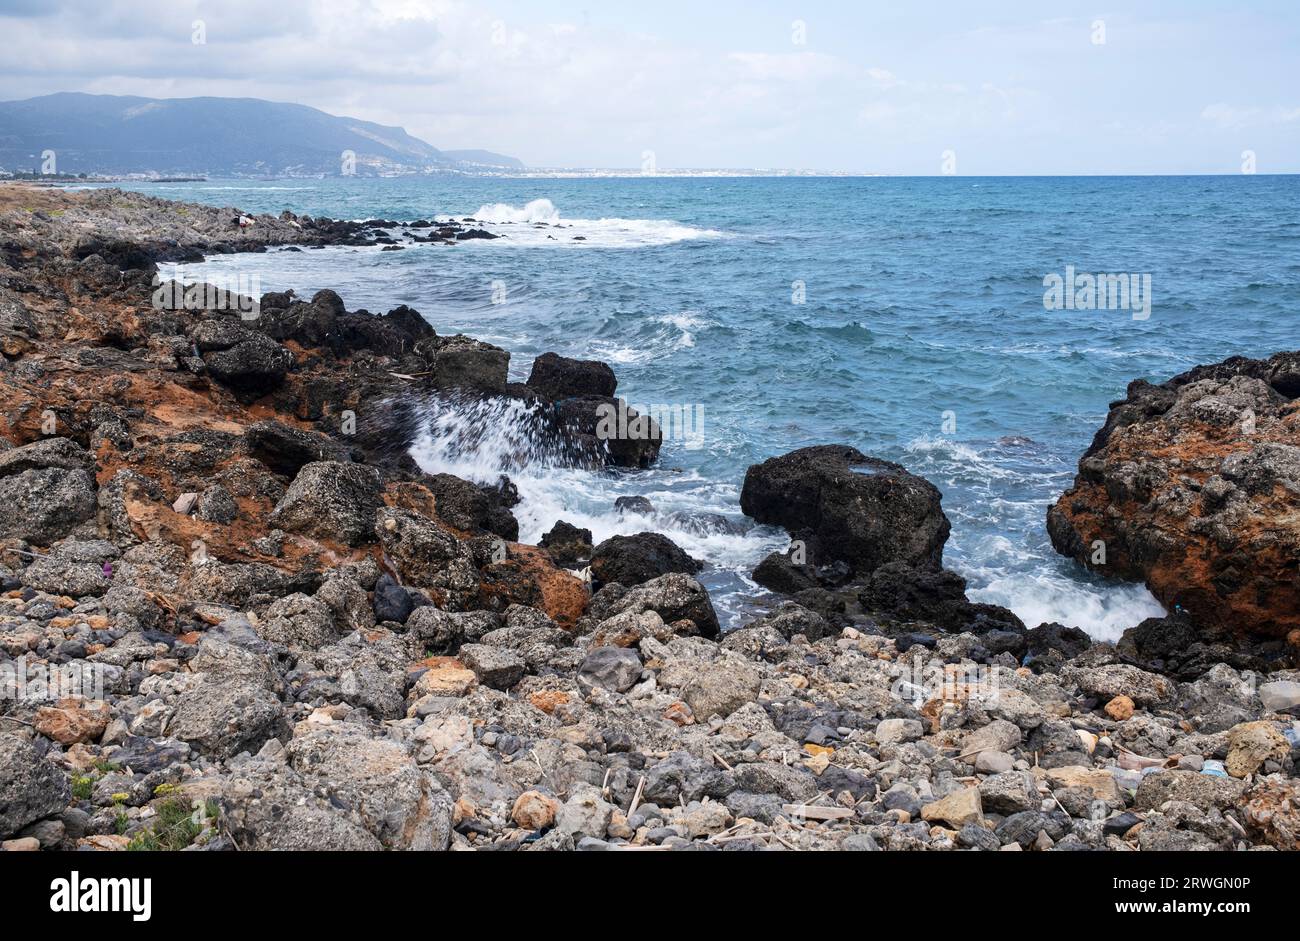 Rocce costiere, Mare di Creta o Mare di Creta, parte del Mar Egeo, costa settentrionale di Creta, Grecia Foto Stock